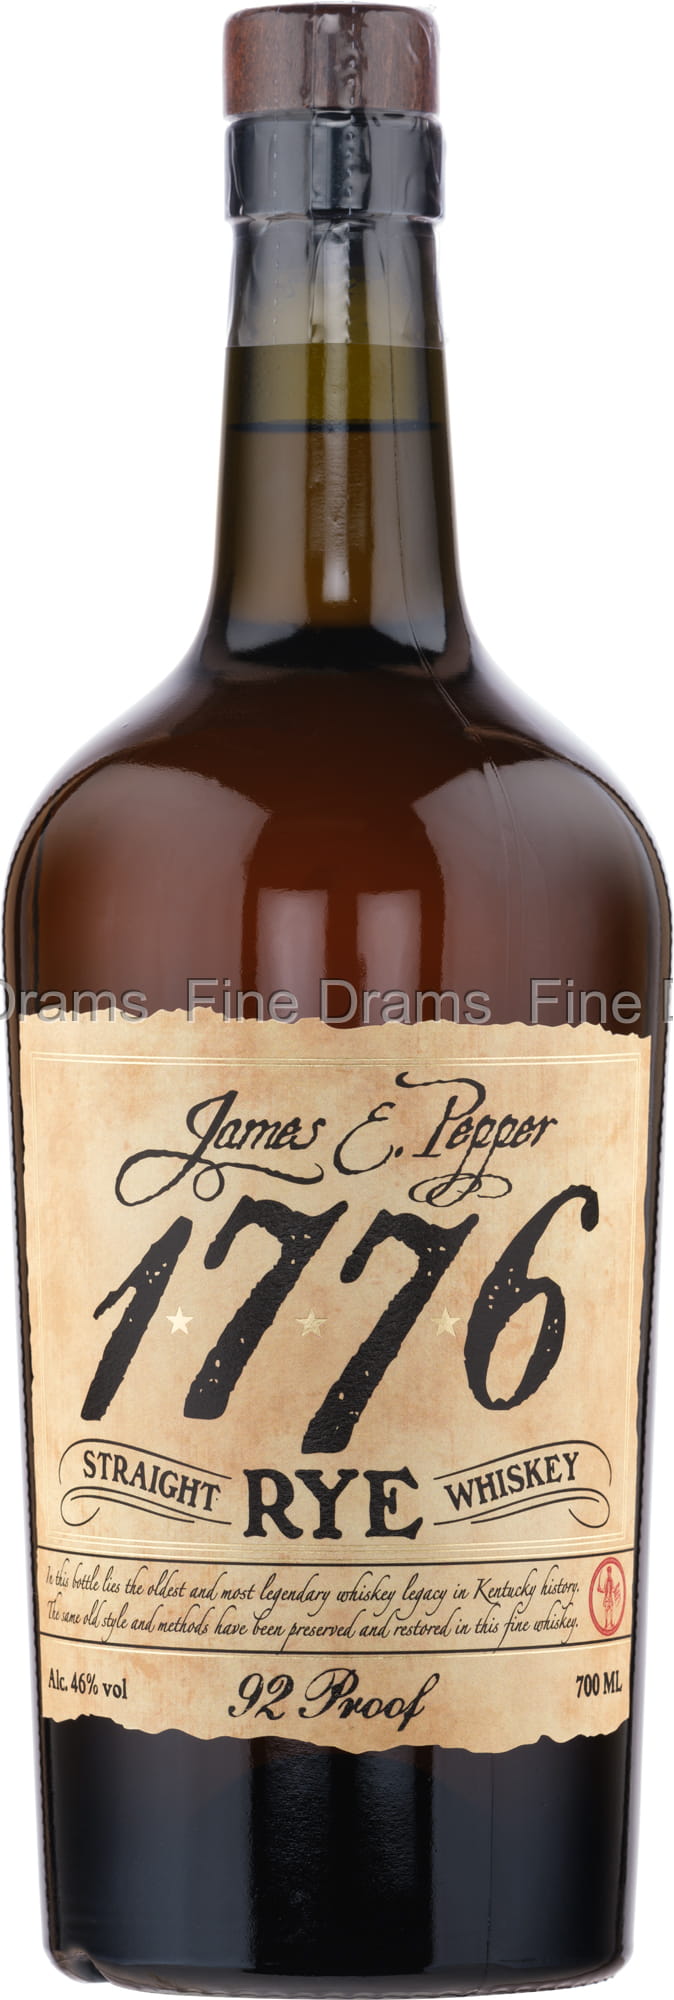 James E. Pepper (46%) 1776 Rye